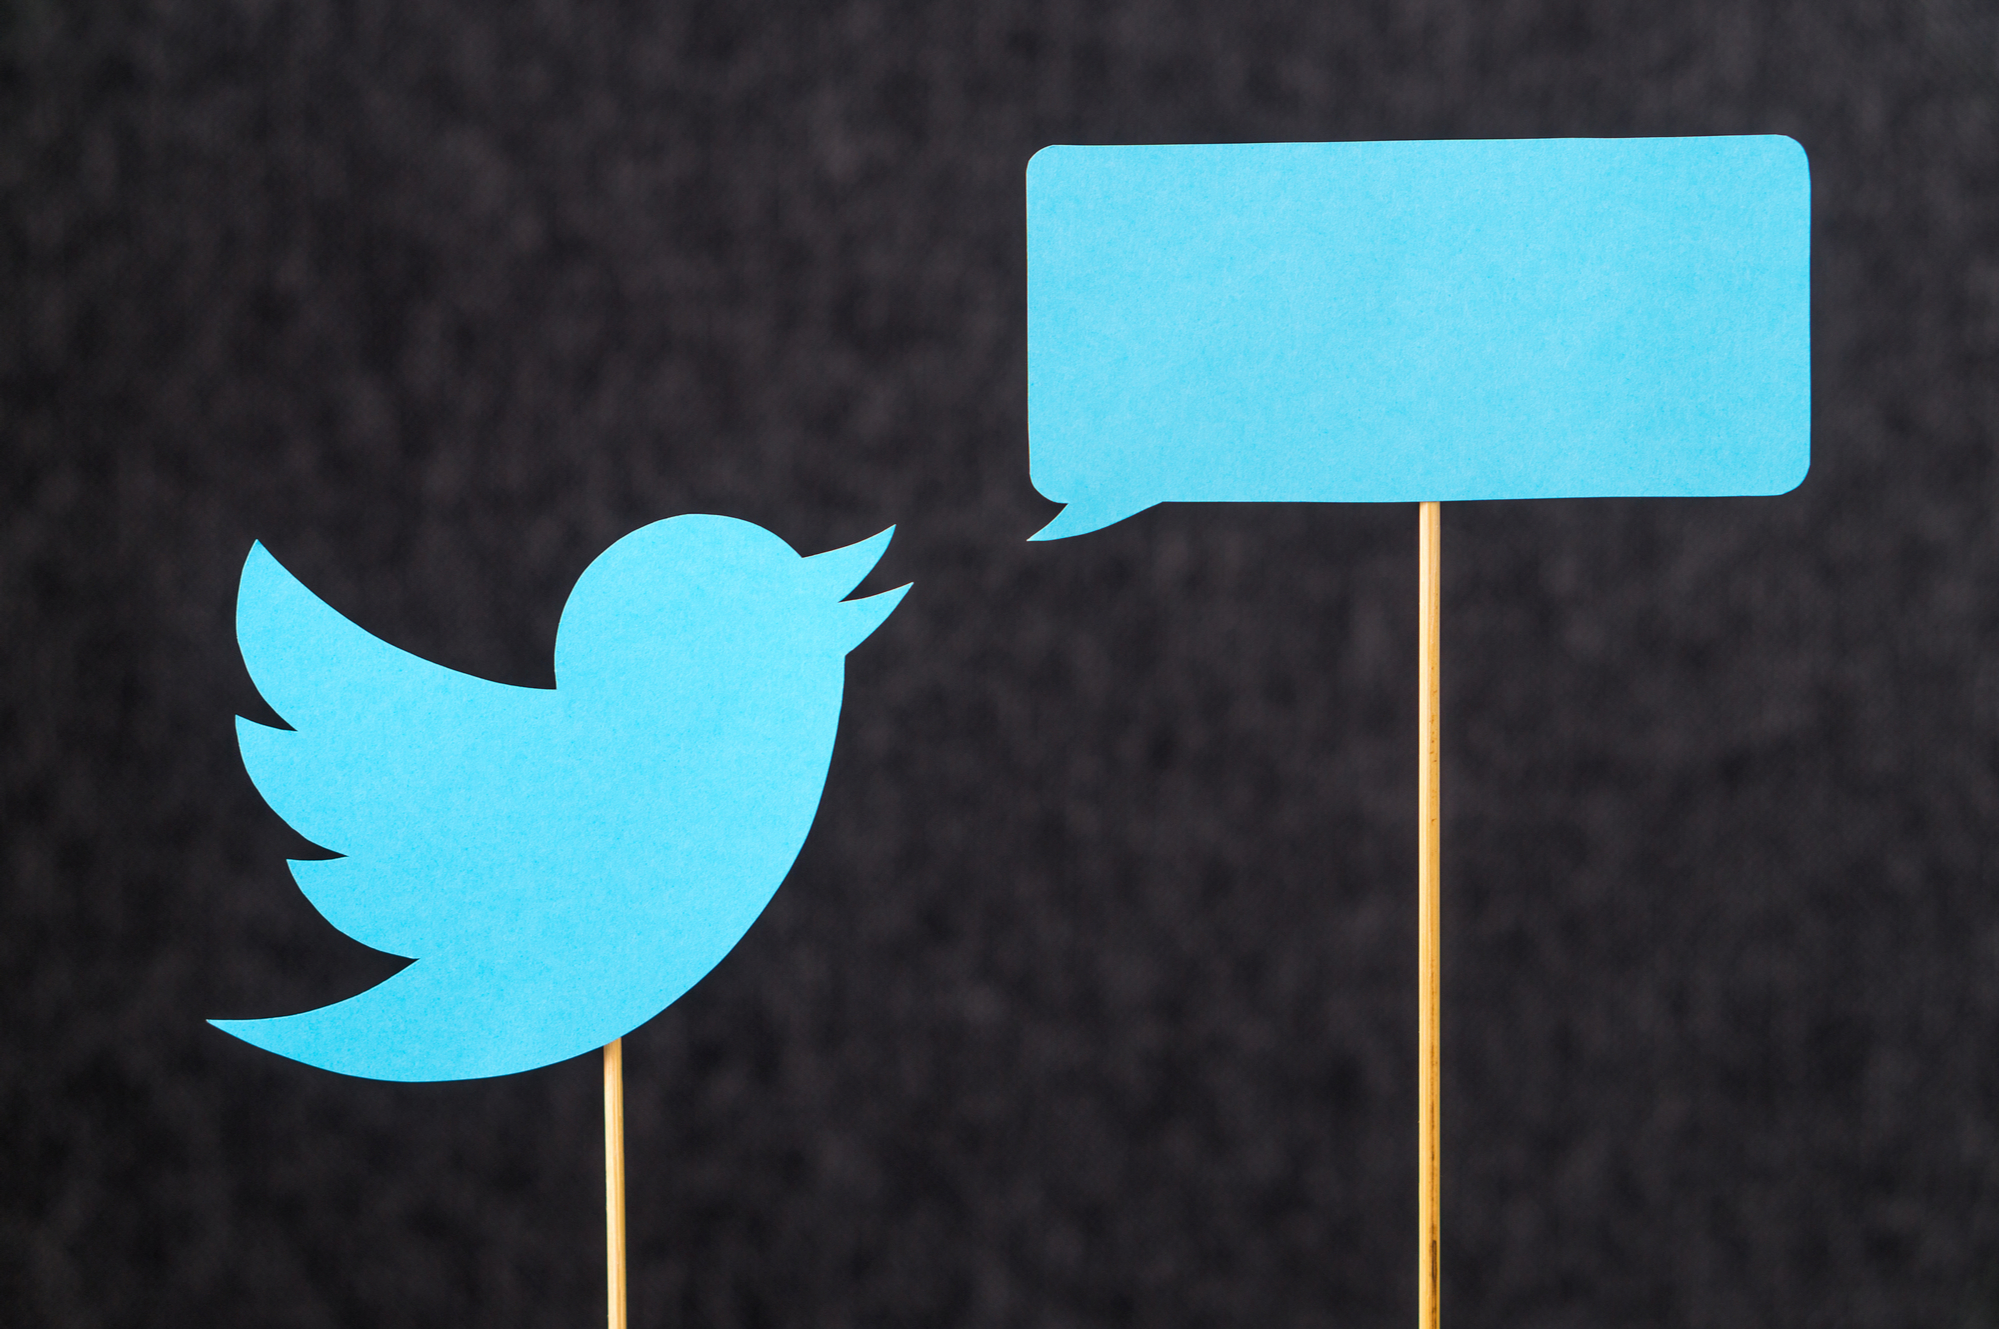 Twitter : une nouvelle interface pour mettre en avant la messagerie